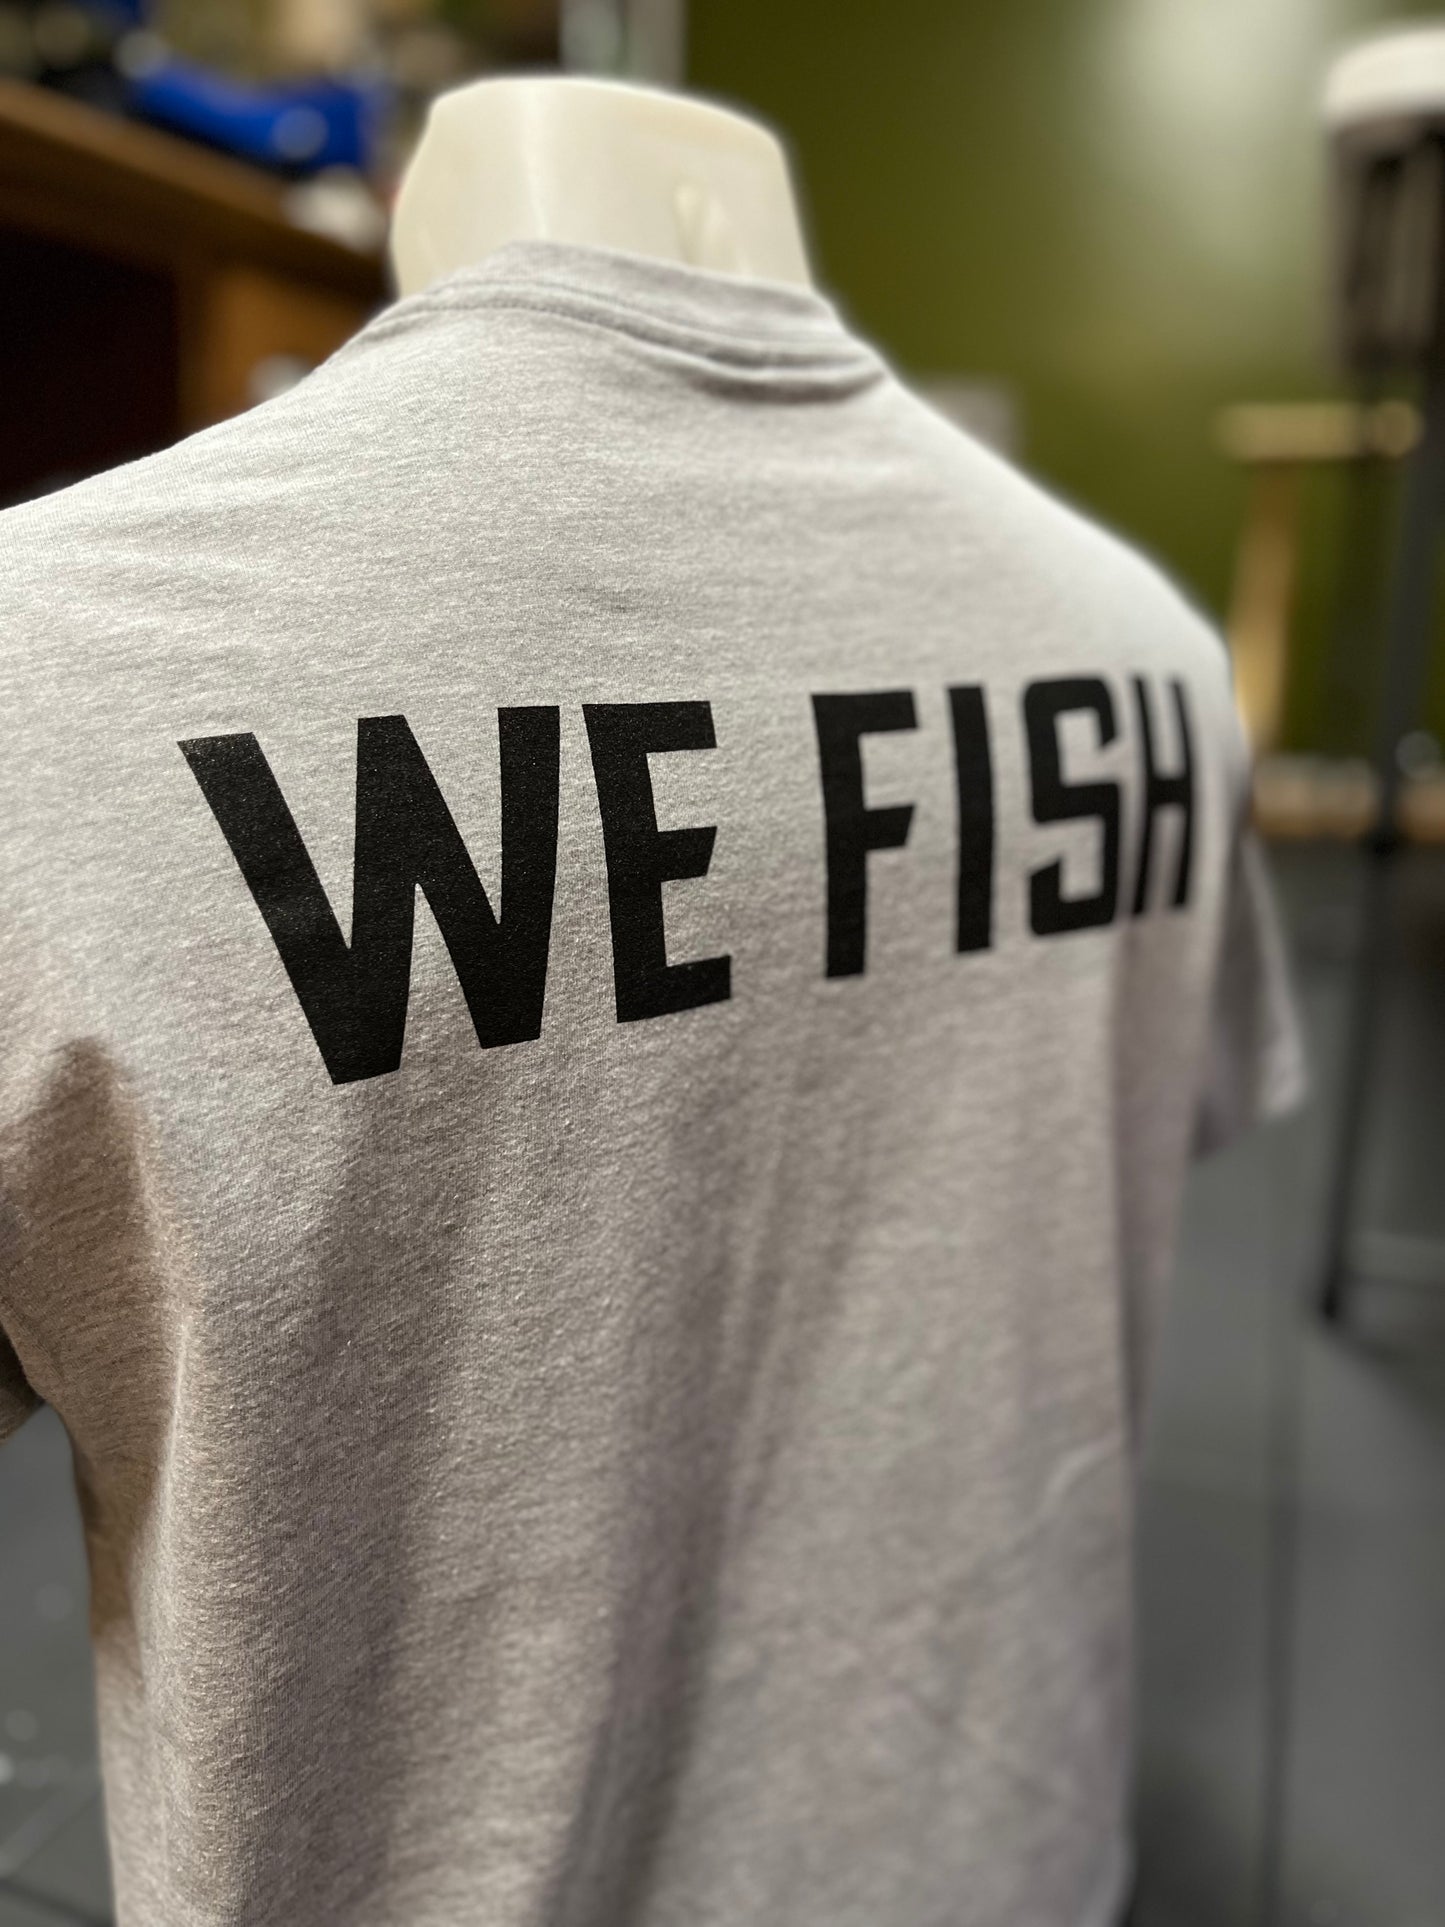 We Fish T-Shirt